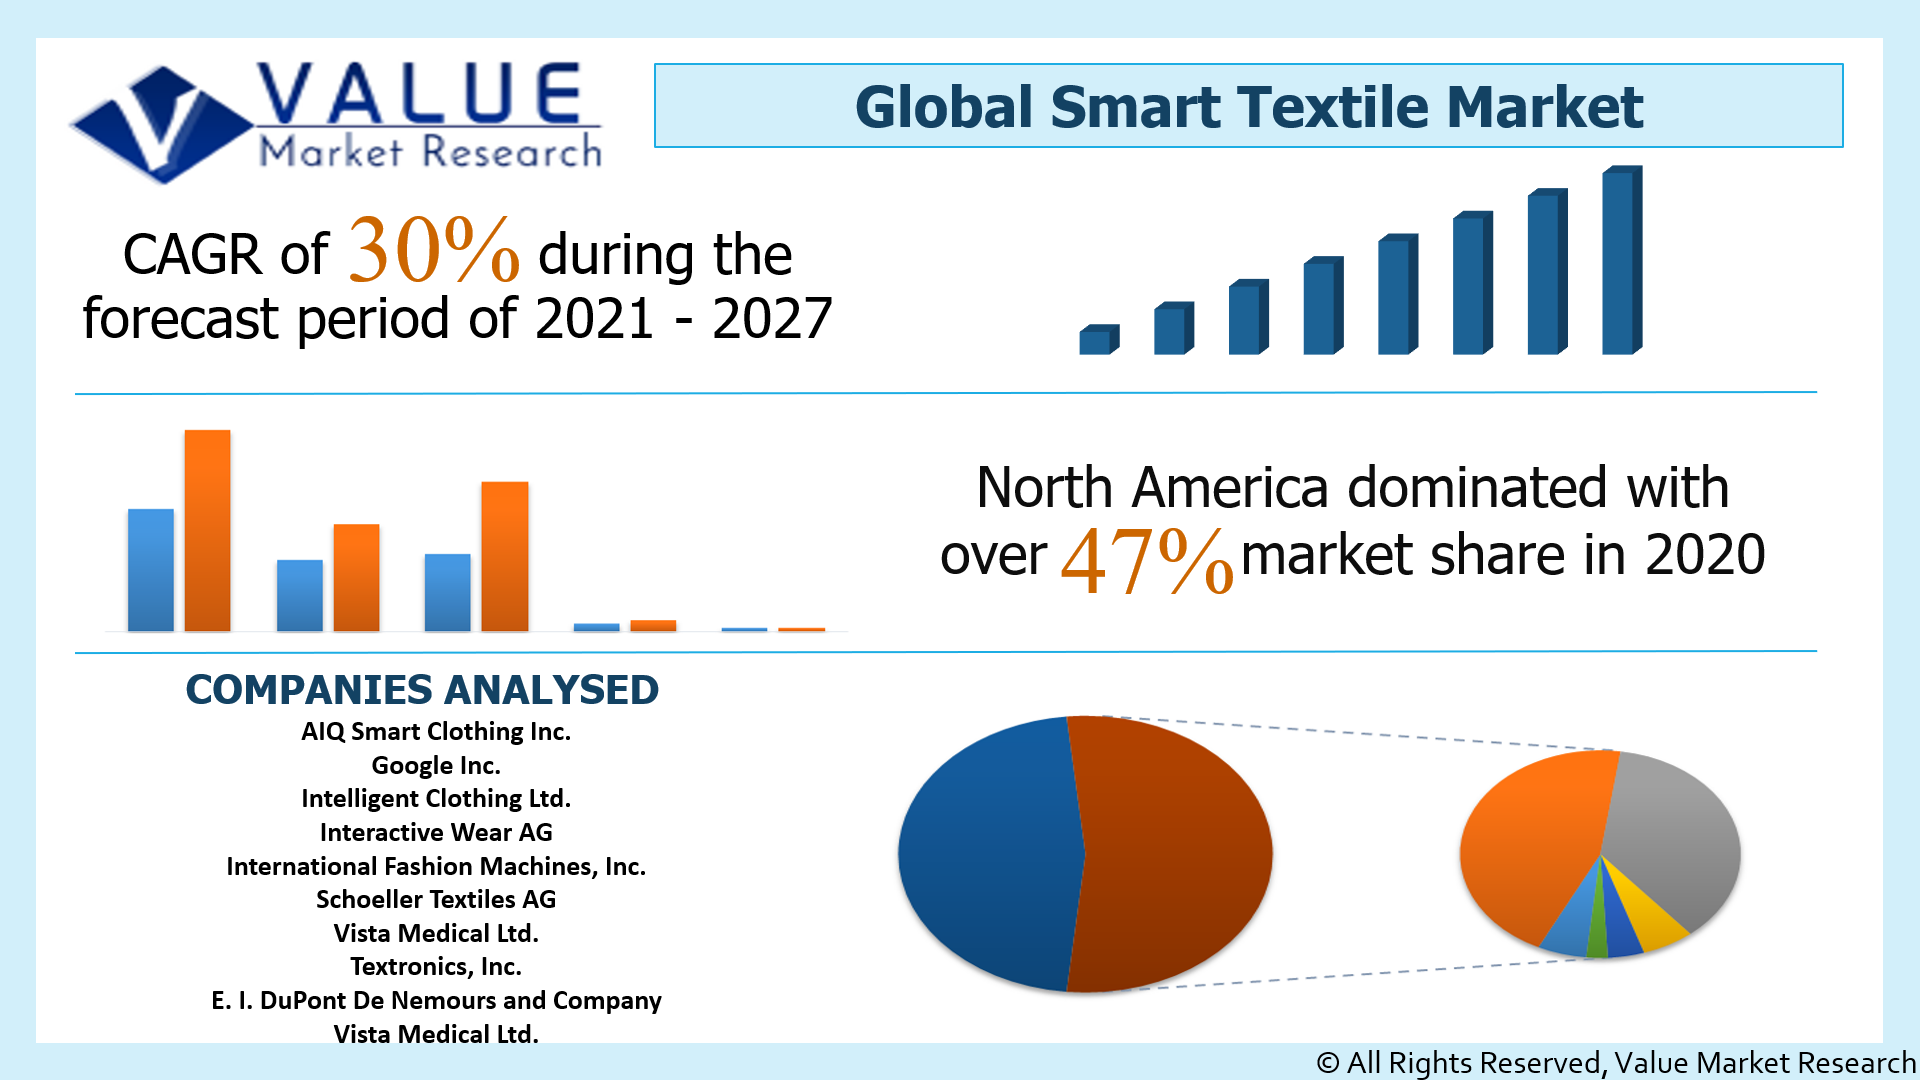 Global Smart Textile Market Share